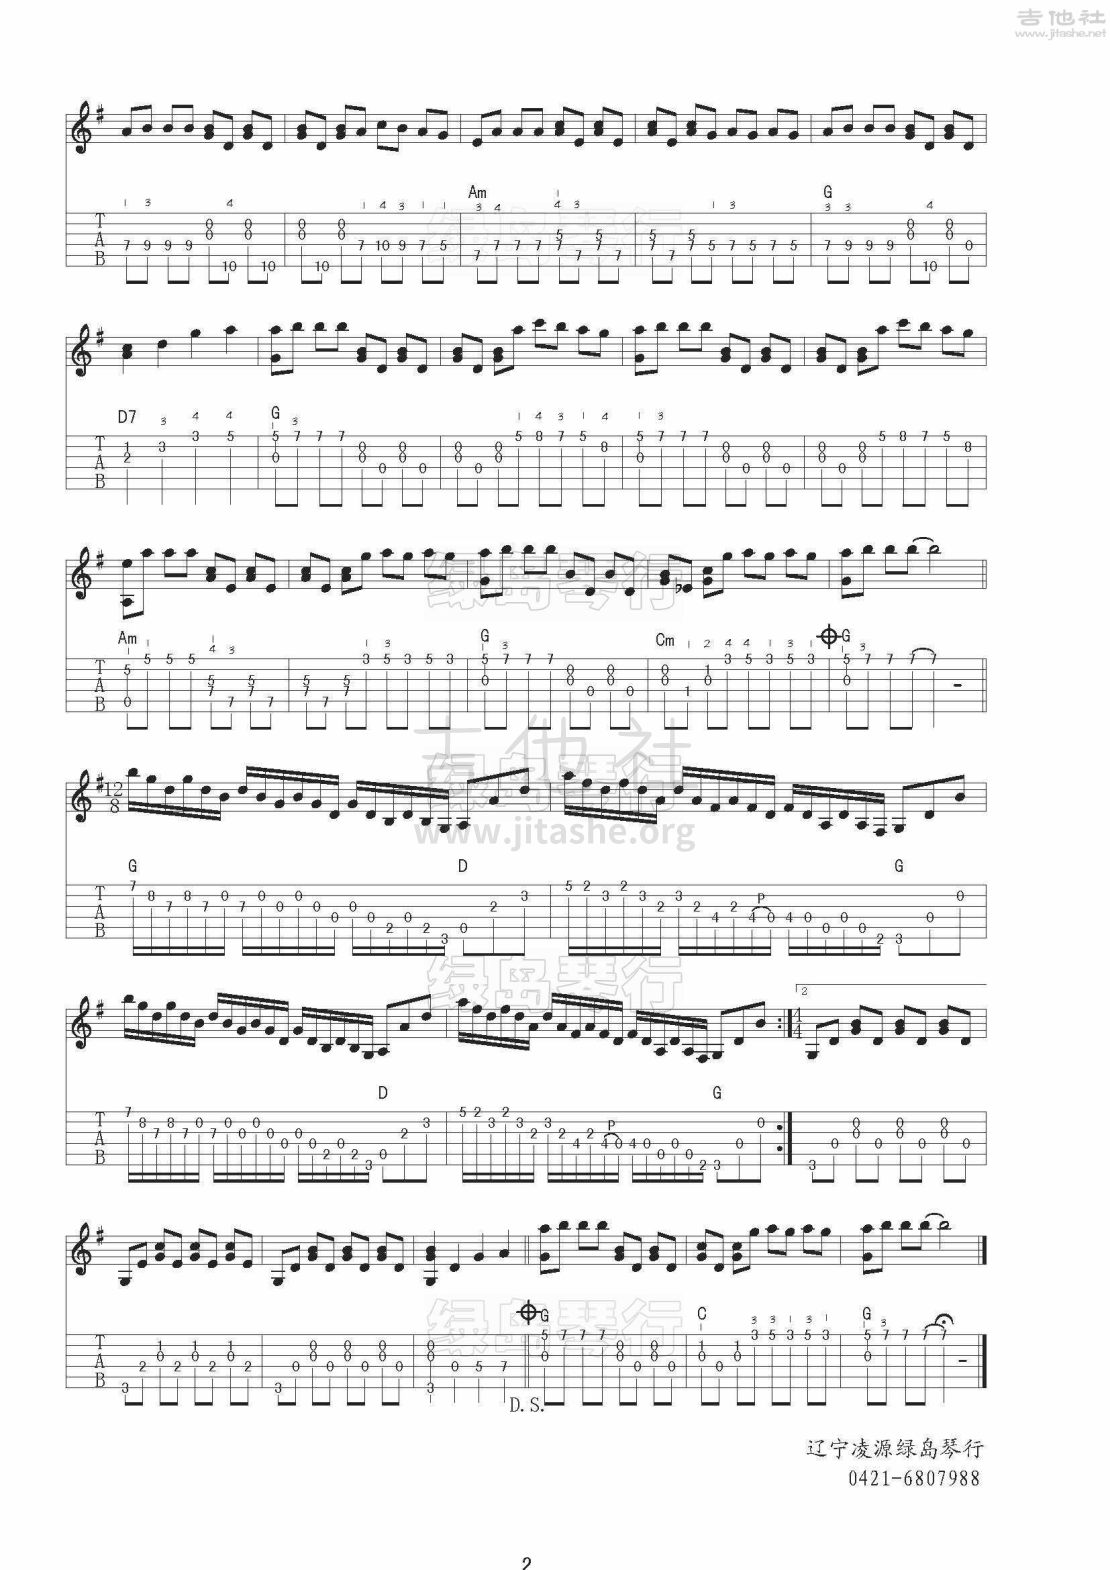 童年的回忆吉他谱(图片谱,指弹)_Richard Clayderman(理查德·克莱德曼)_理查德·克莱德曼_童年的回忆_2.jpg